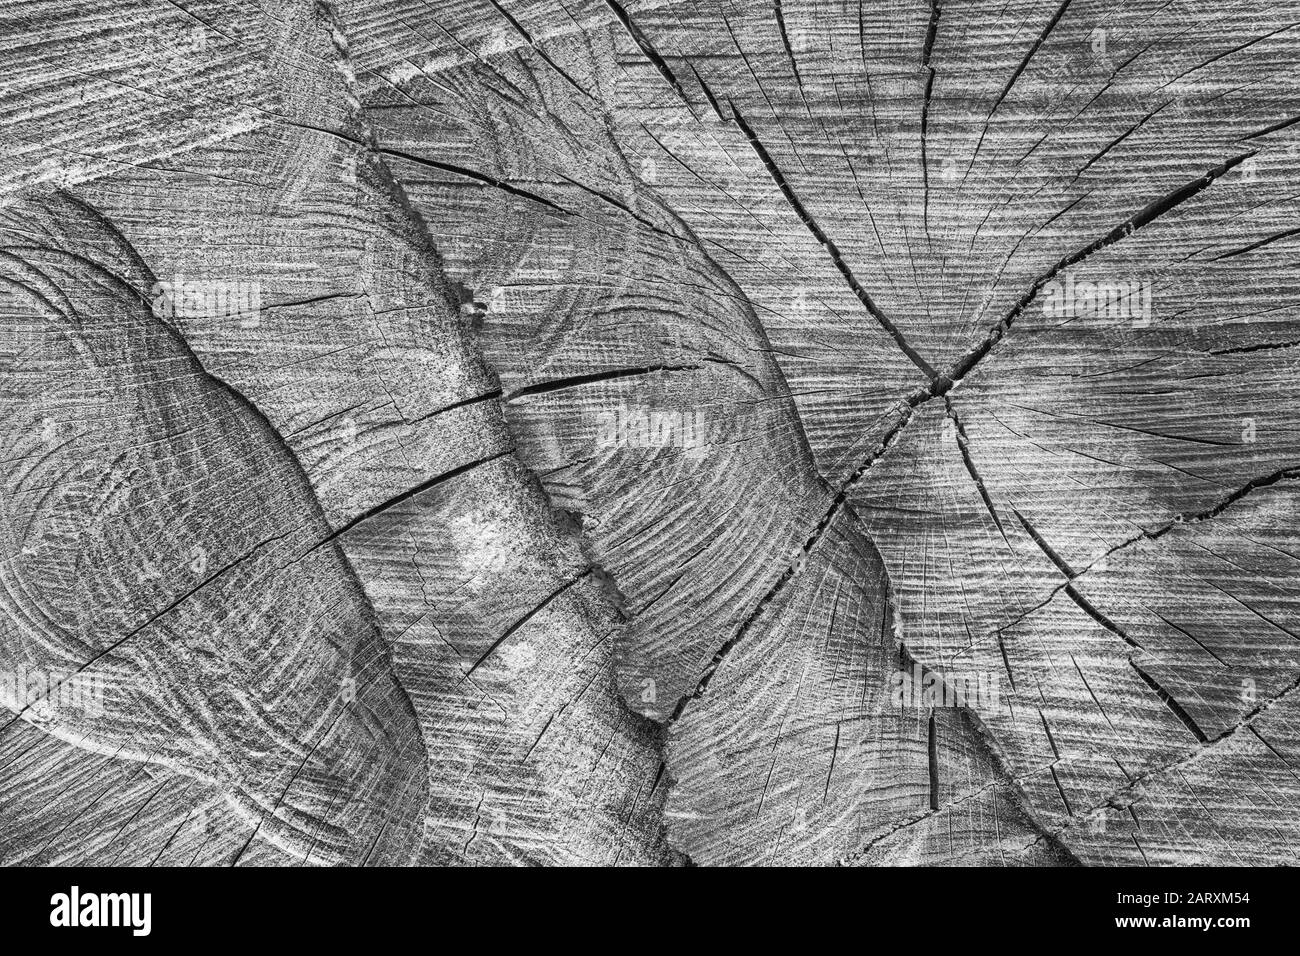 Gritty bianco nero di spaccature, crepe e fessure nella sezione trasversale dell'albero segato. Fessure, spaccature, e crepe apparendo, industria di legno. Albero Foto Stock